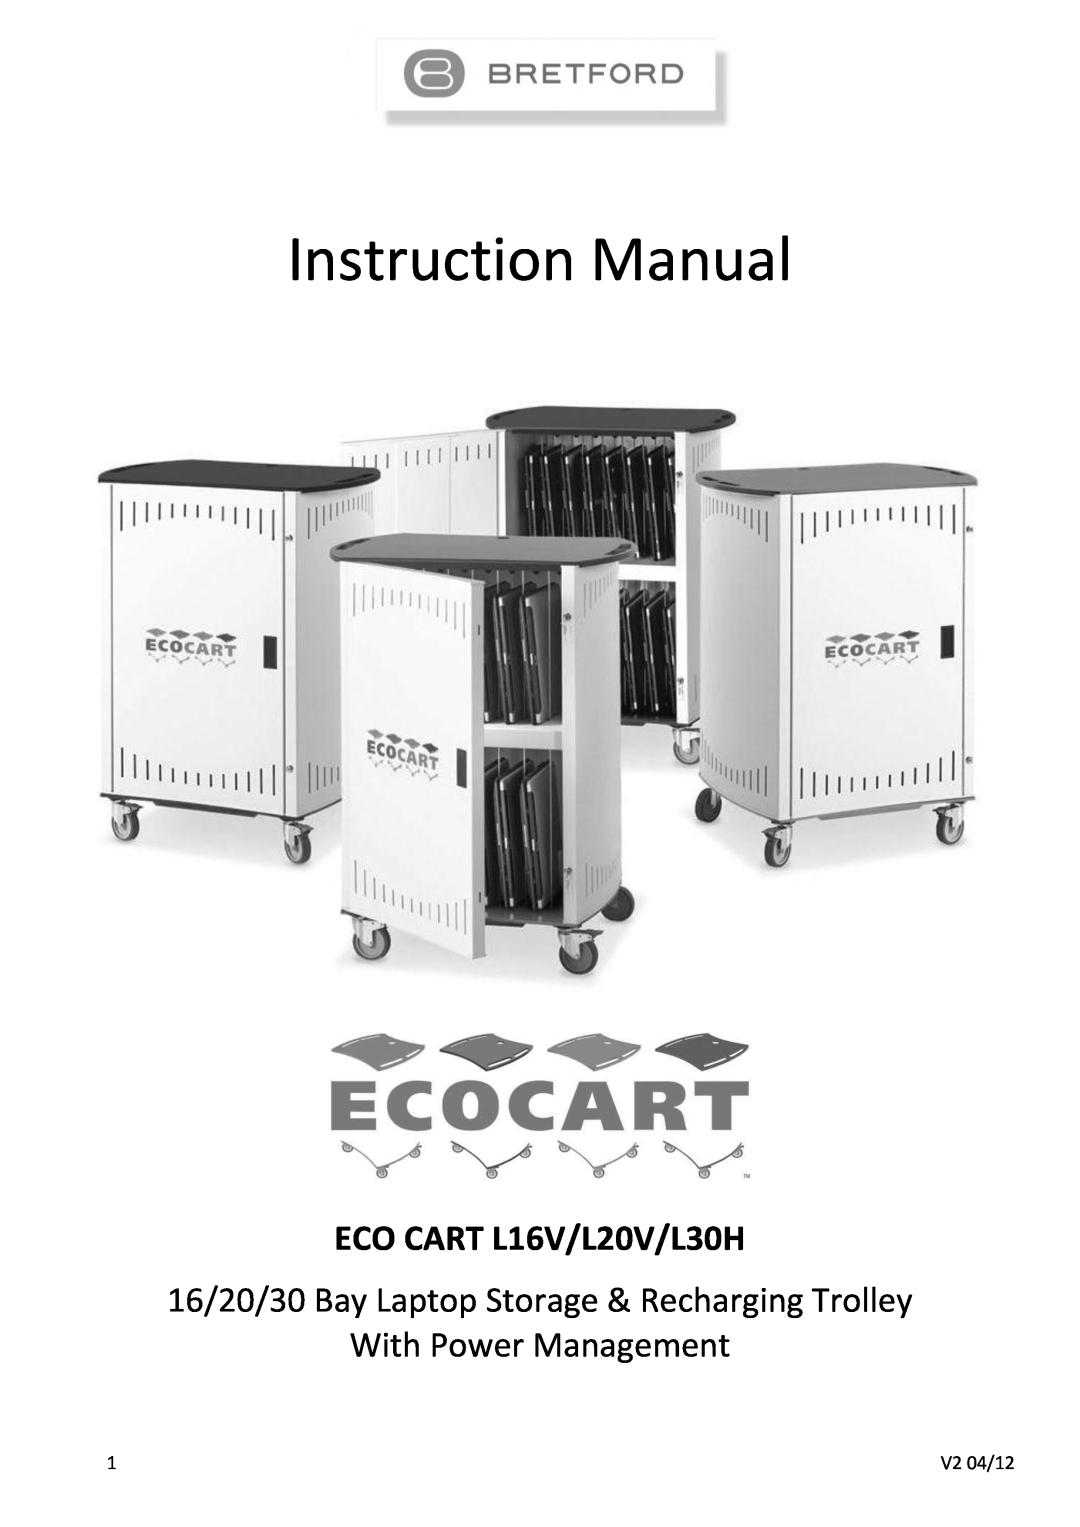 Bretford instruction manual Instruction Manual, ECO CART L16V/L20V/L30H, With Power Management 